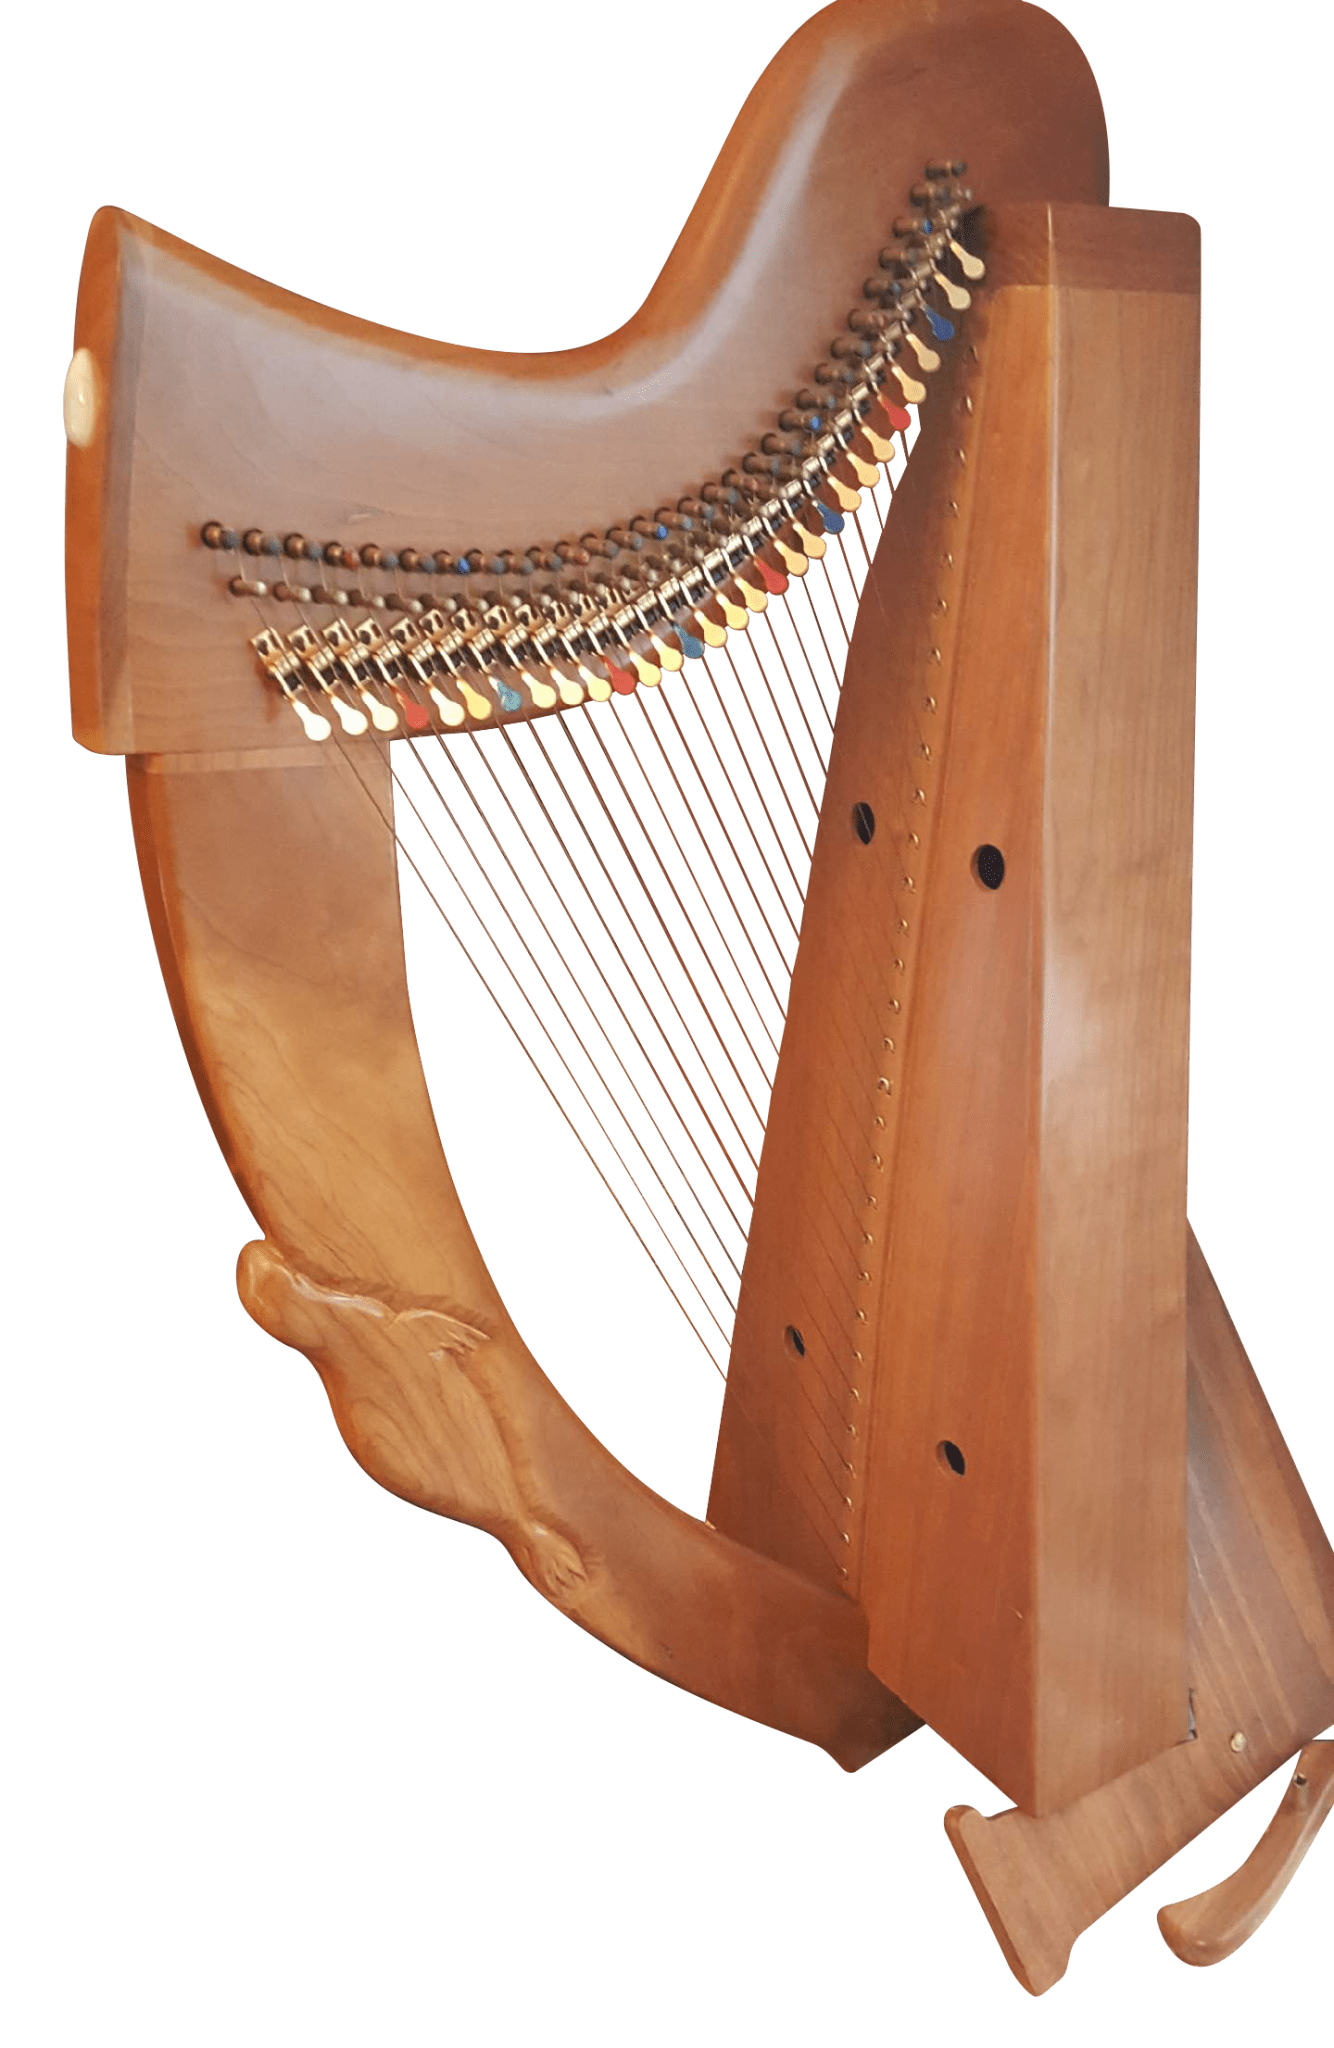 Harps and harps Trinity